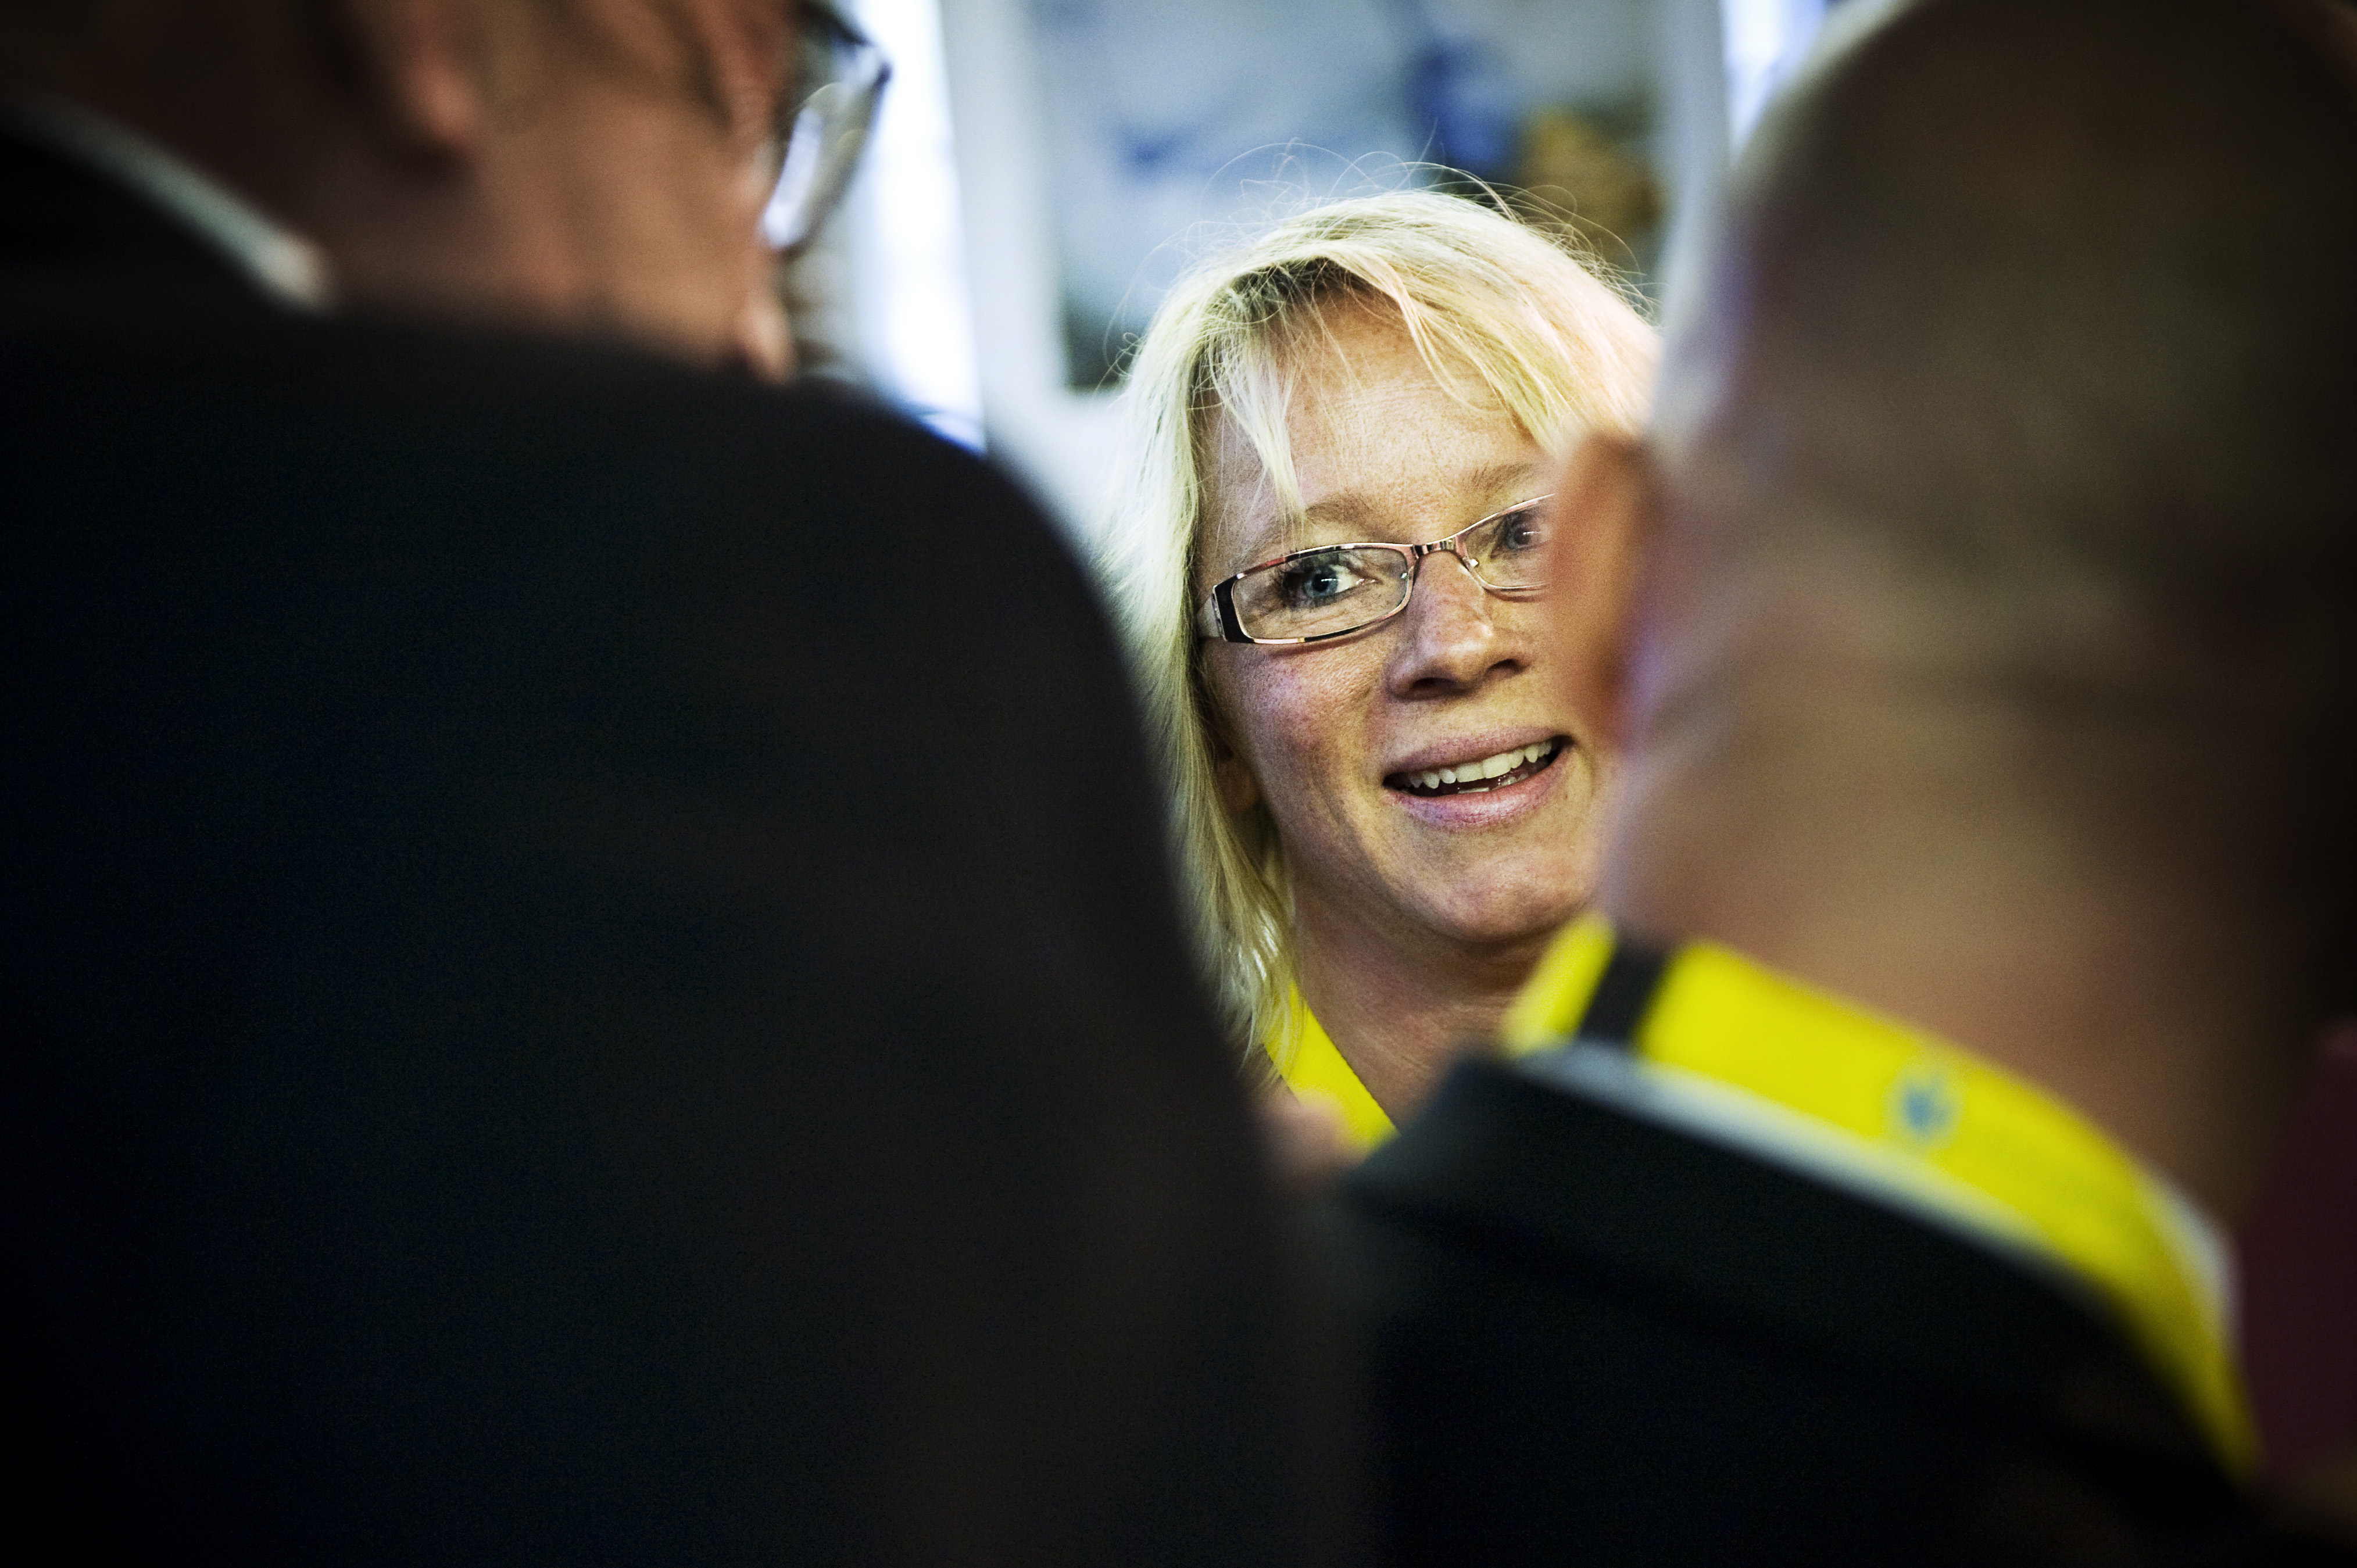 Men sverigedemokraten Carina Herrstedt är inte orolig: "Vi har kompetent folk", säger hon.